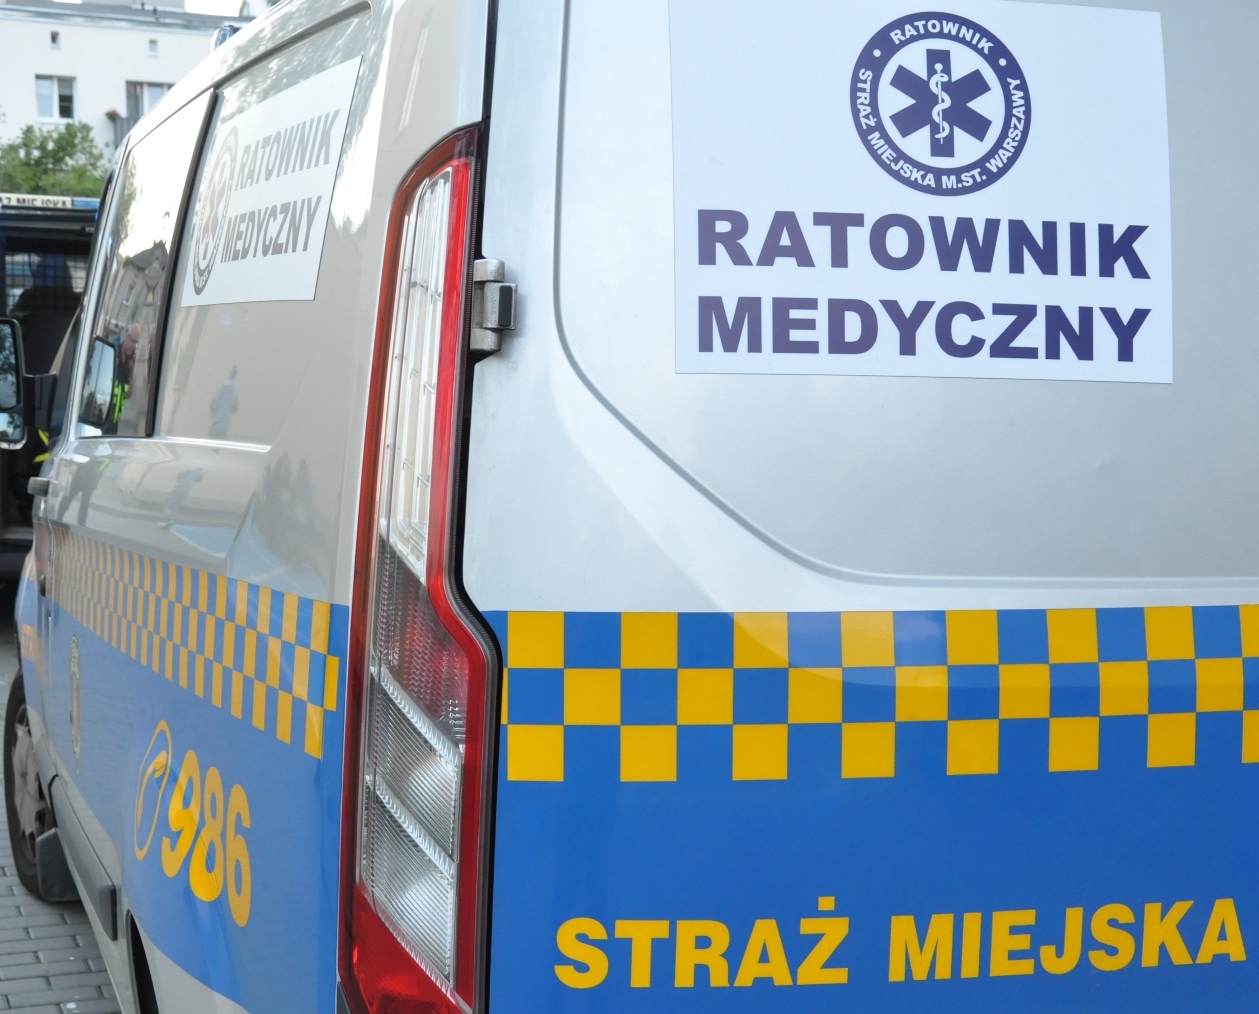 Zdjęcie ilustracyjne: radiowóz straży miejskiej z emblematem "Ratownik medyczny".